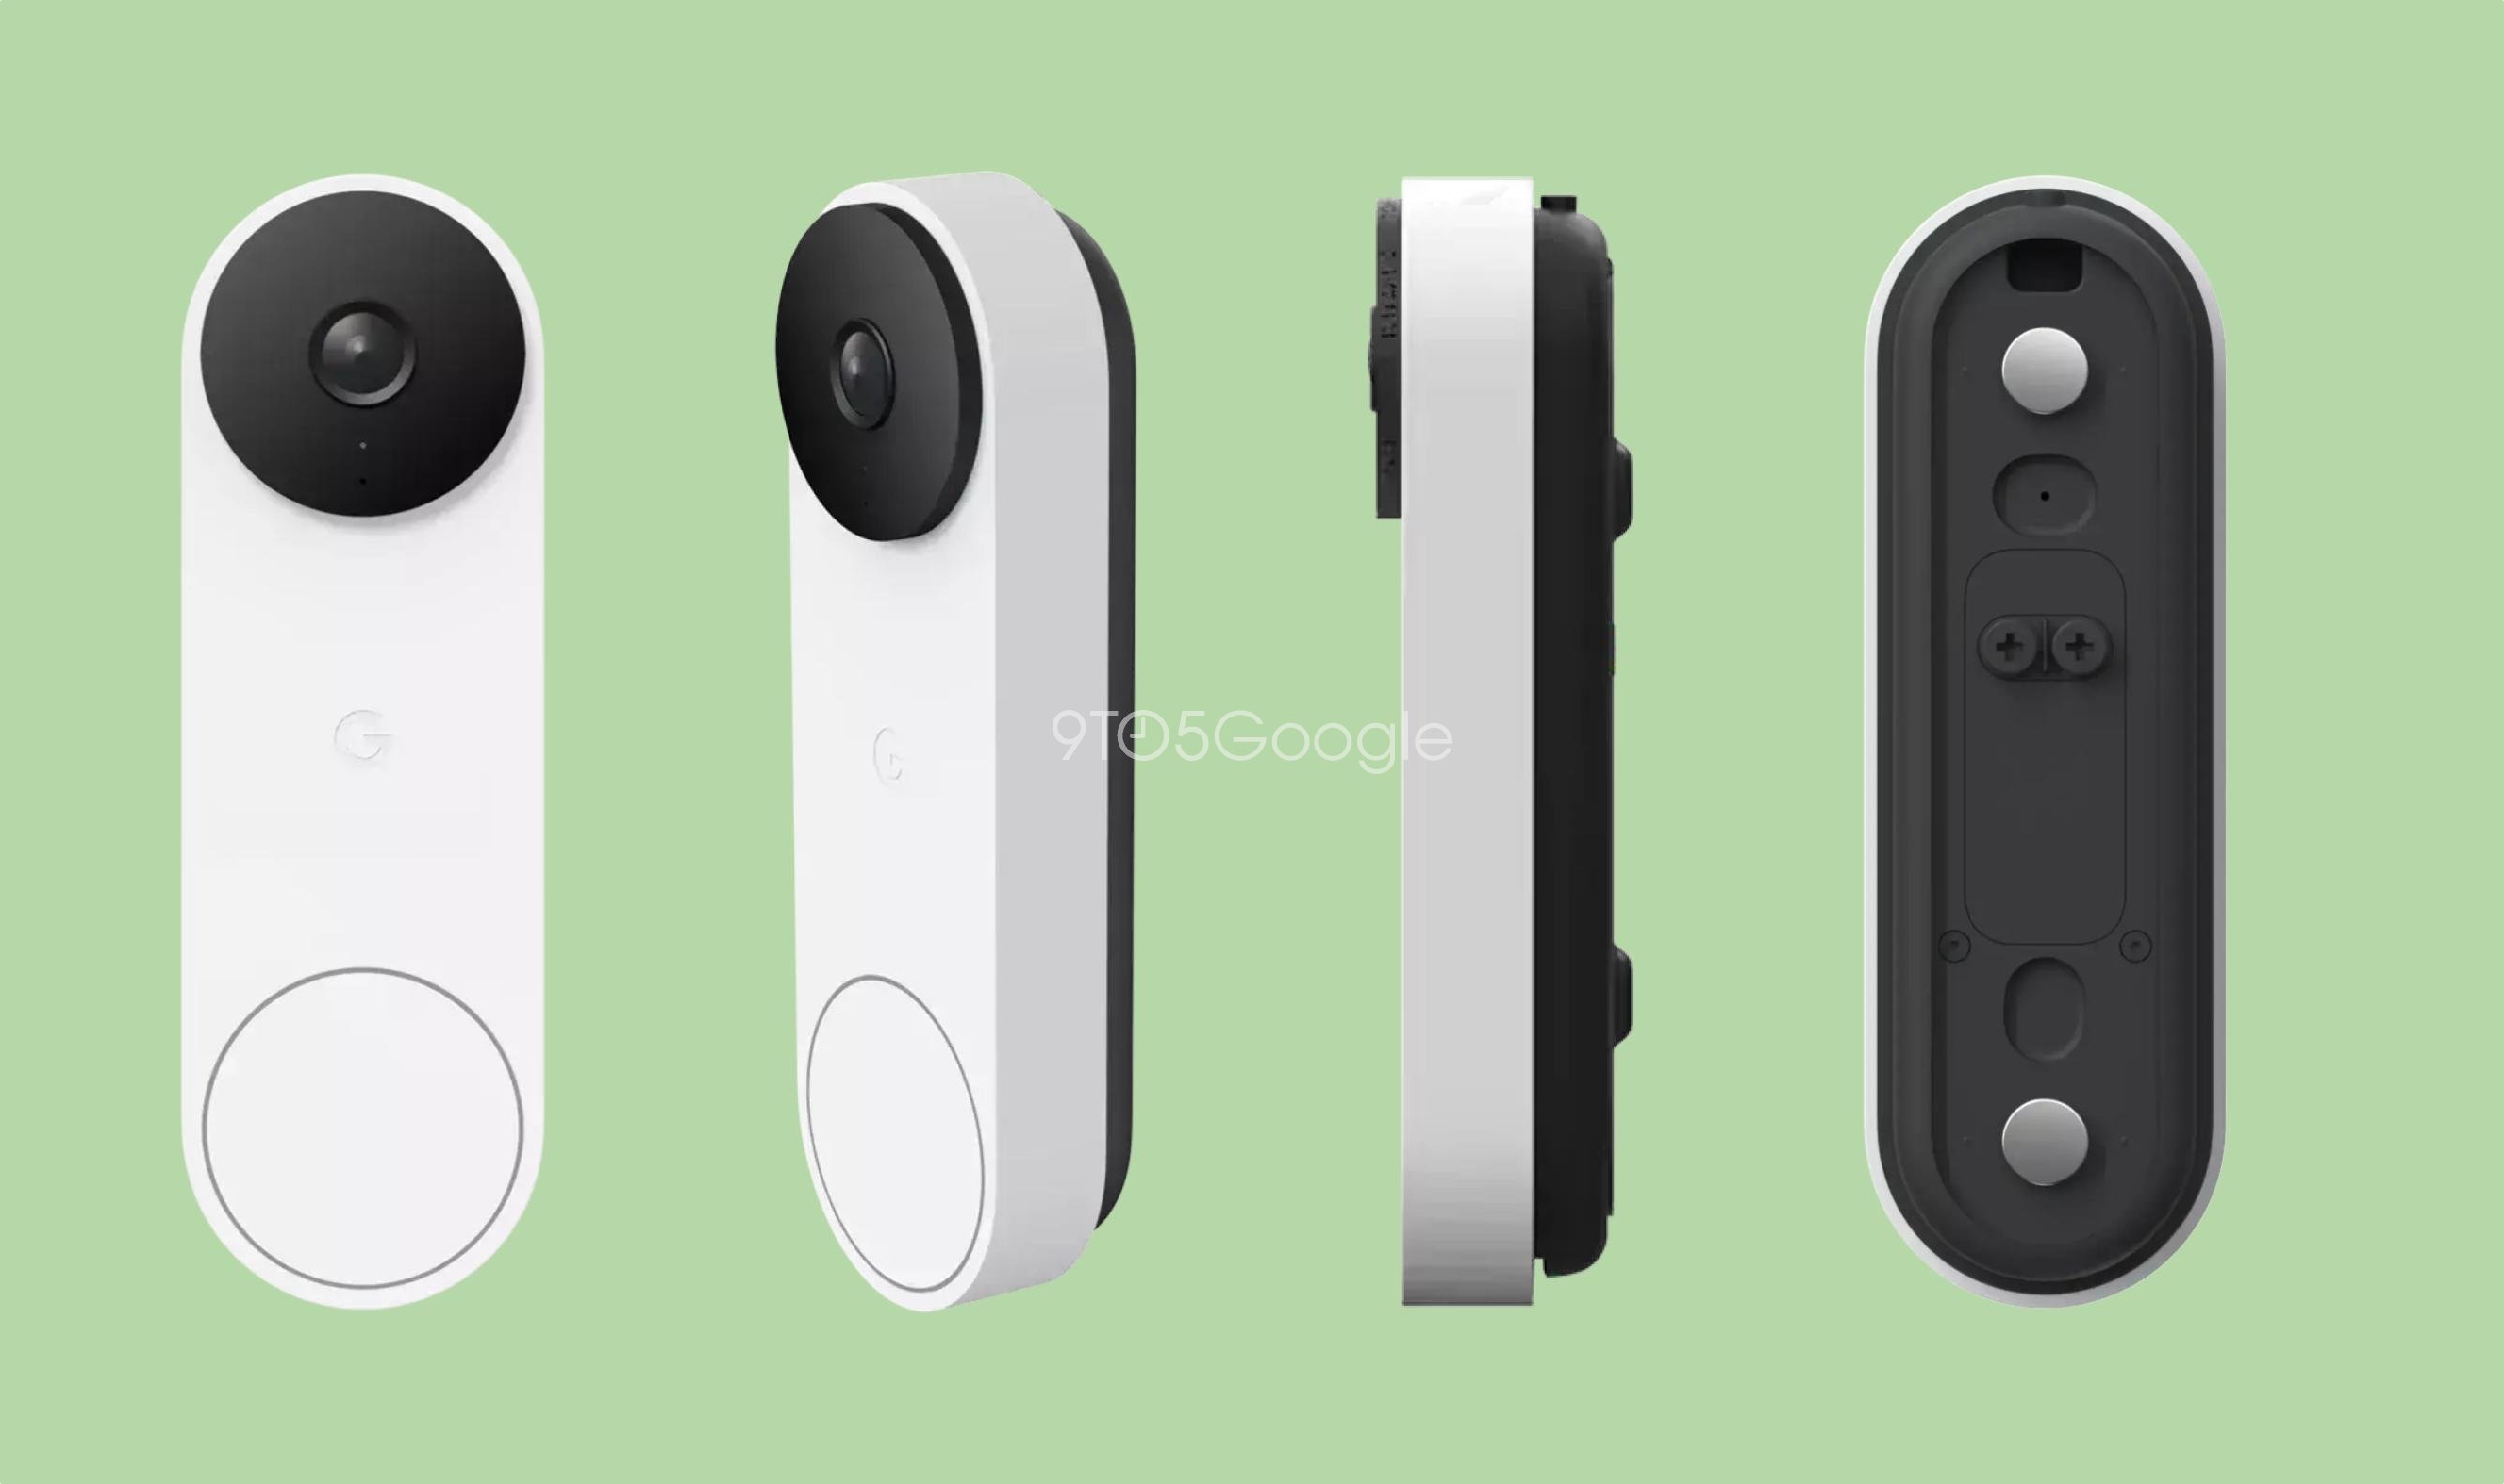 Google lanzará un nuevo timbre inteligente Nest Doorbell, el dispositivo tendrá una cámara y conexión por cable